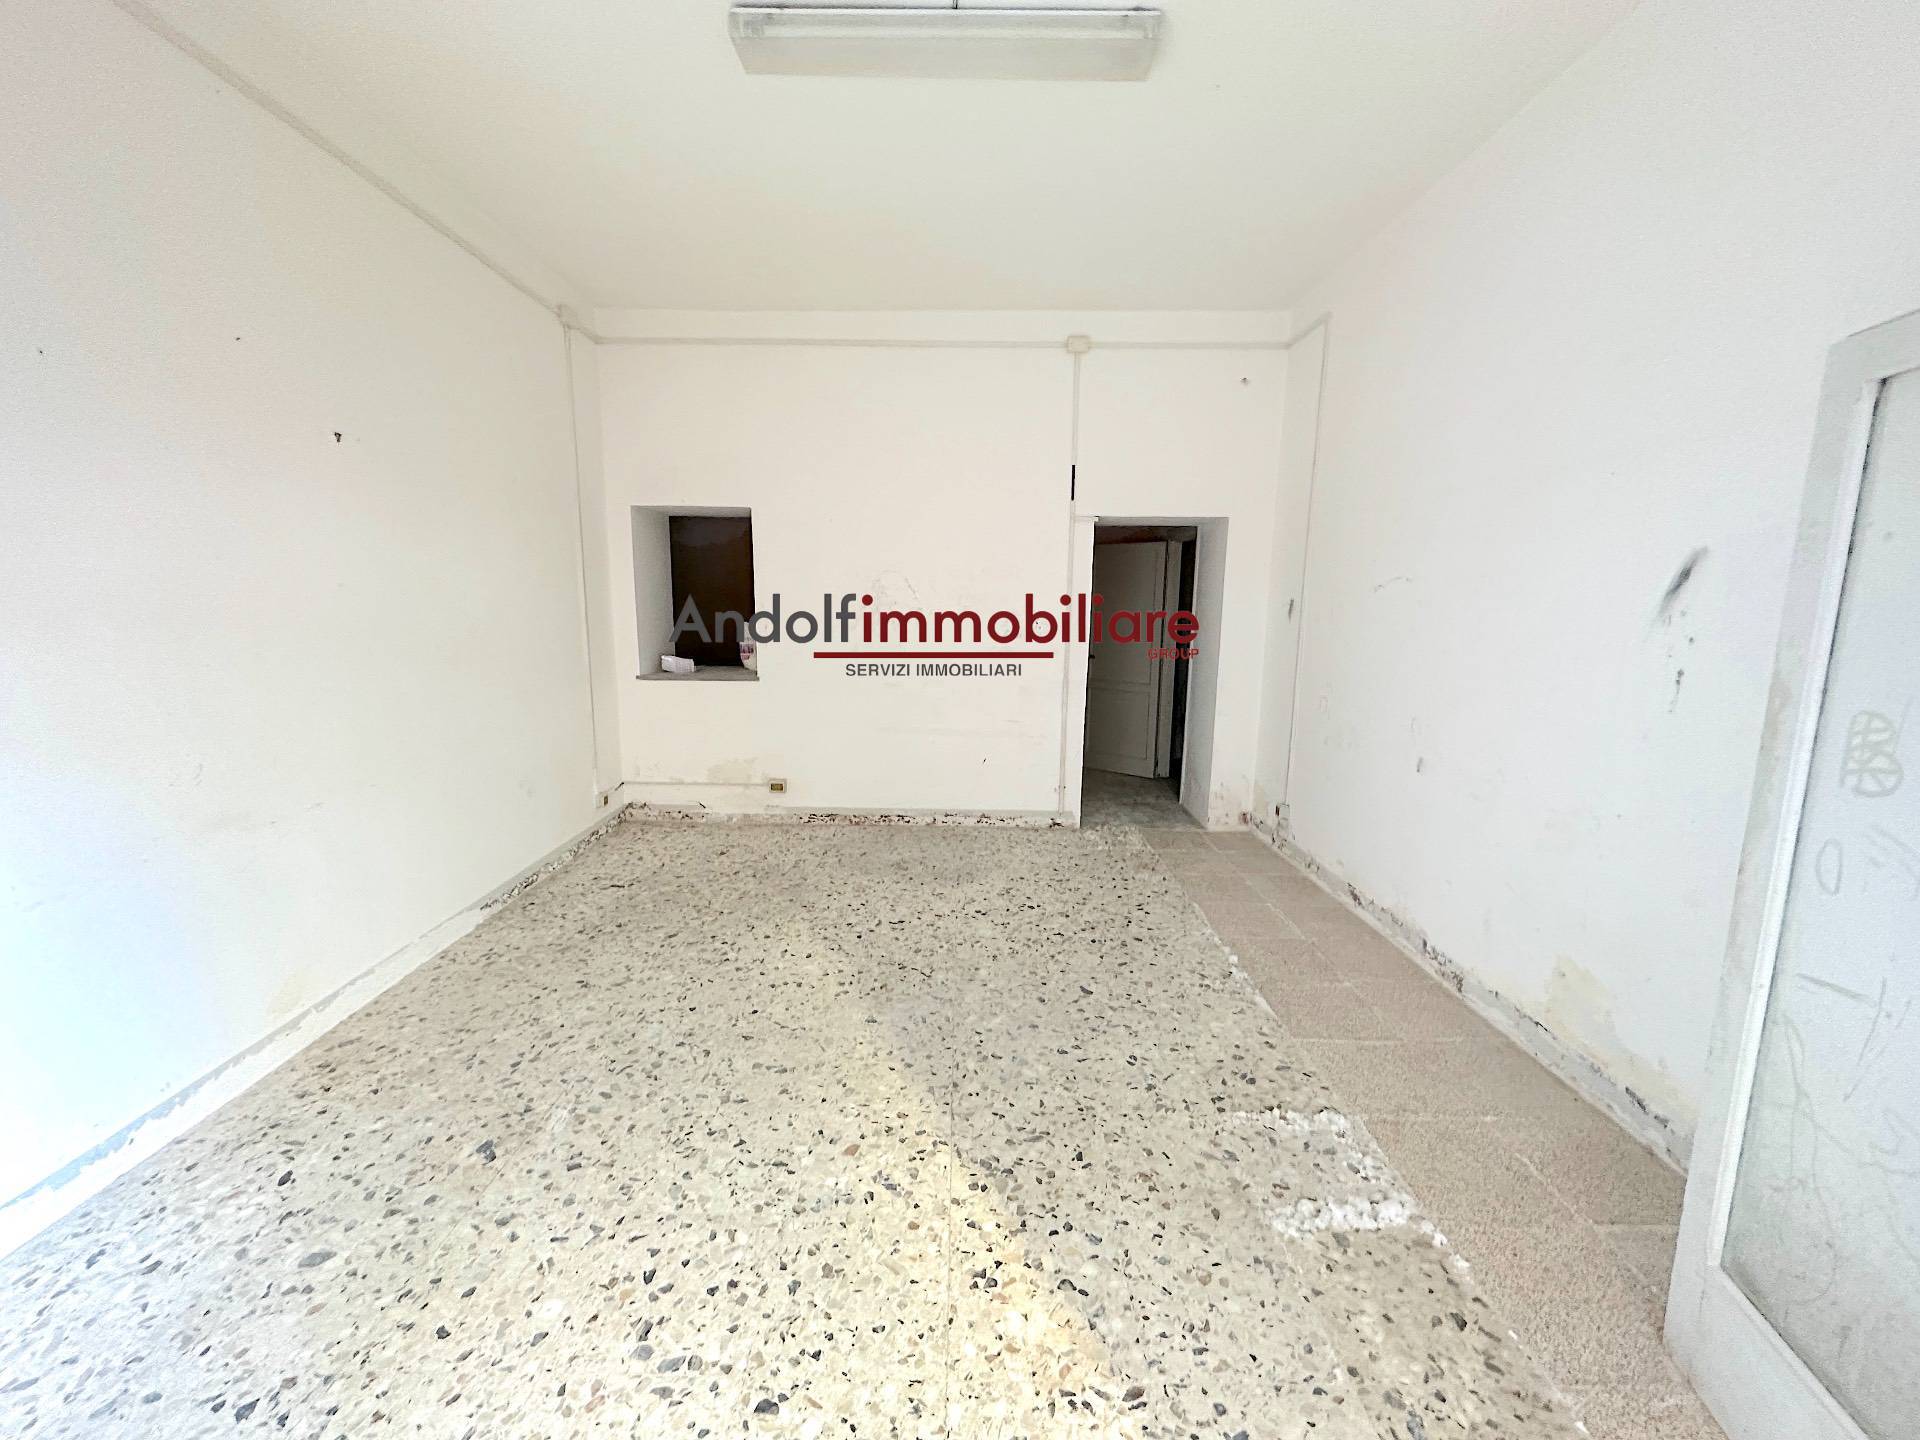 Negozio / Locale in vendita a Gaeta, 9999 locali, prezzo € 38.000 | CambioCasa.it